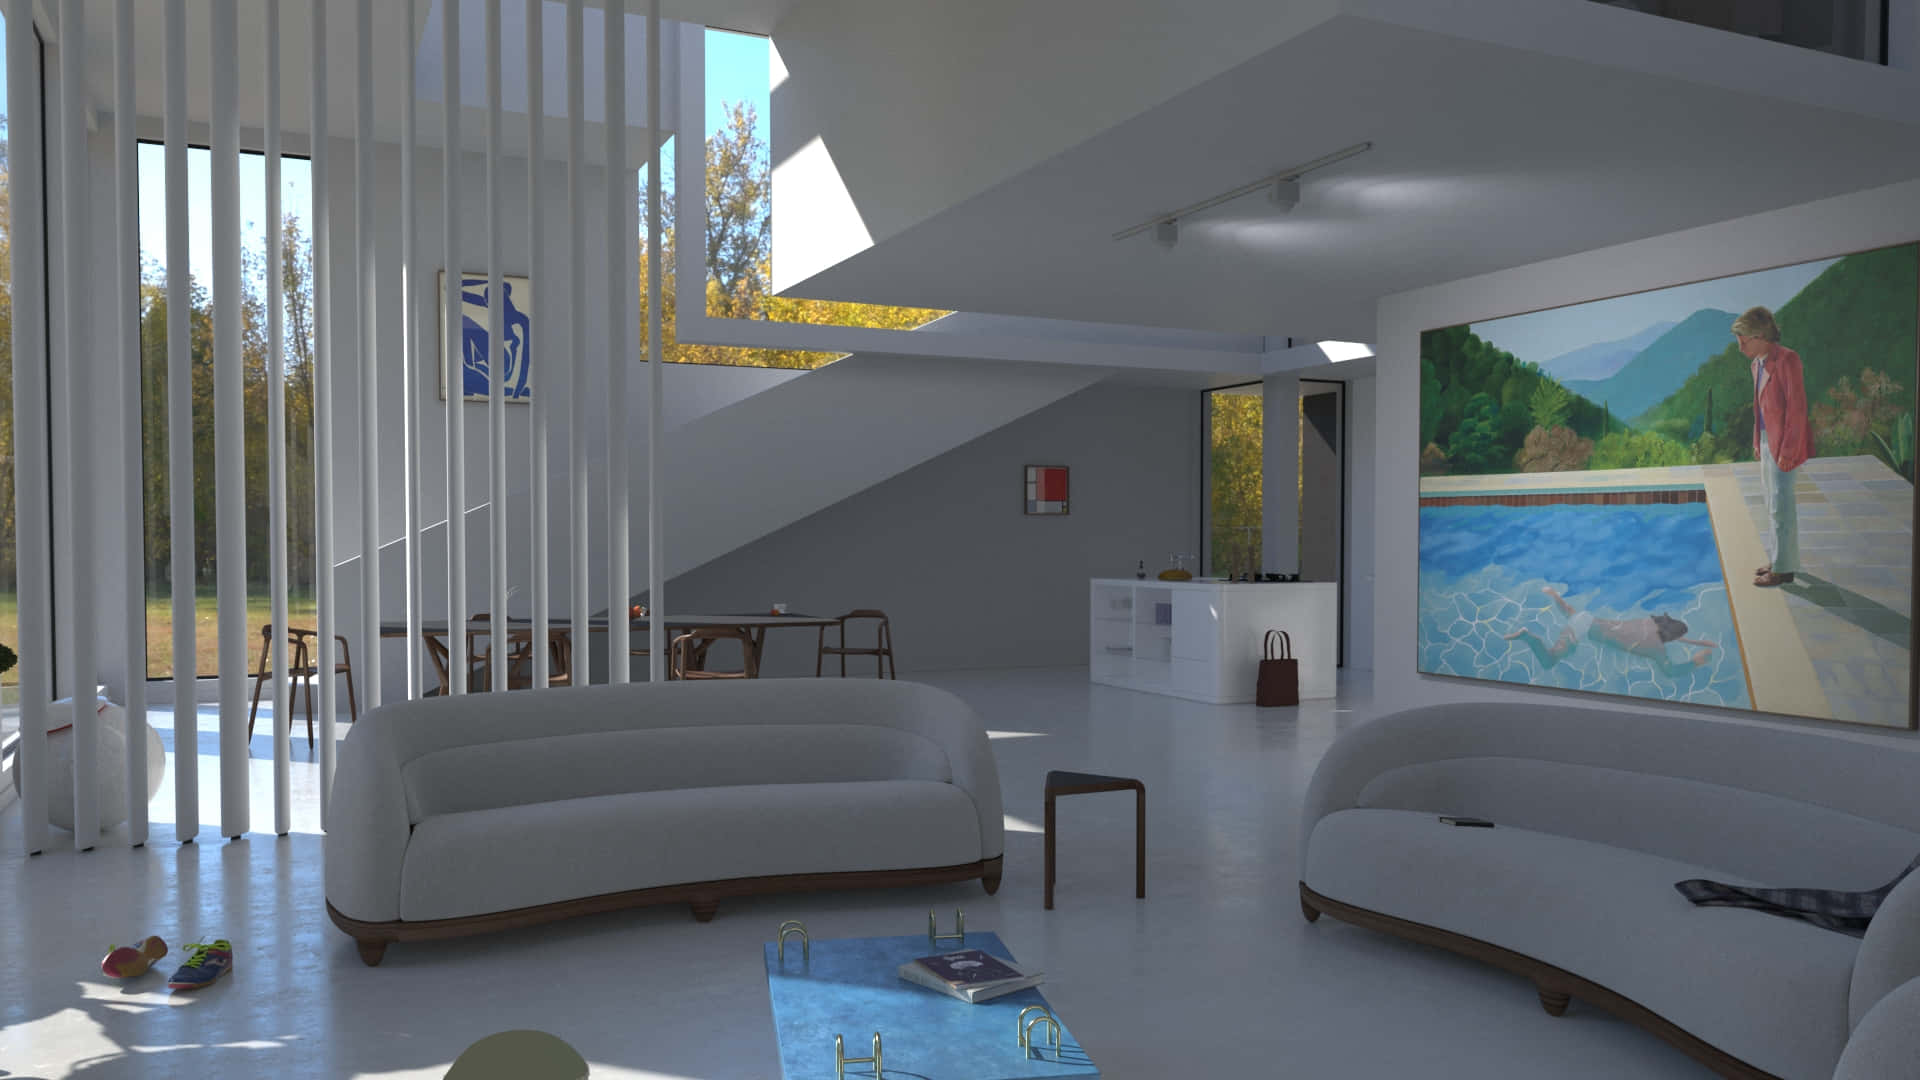 Wohnzimmermit Modernem Design Als Virtuellen Hintergrund.